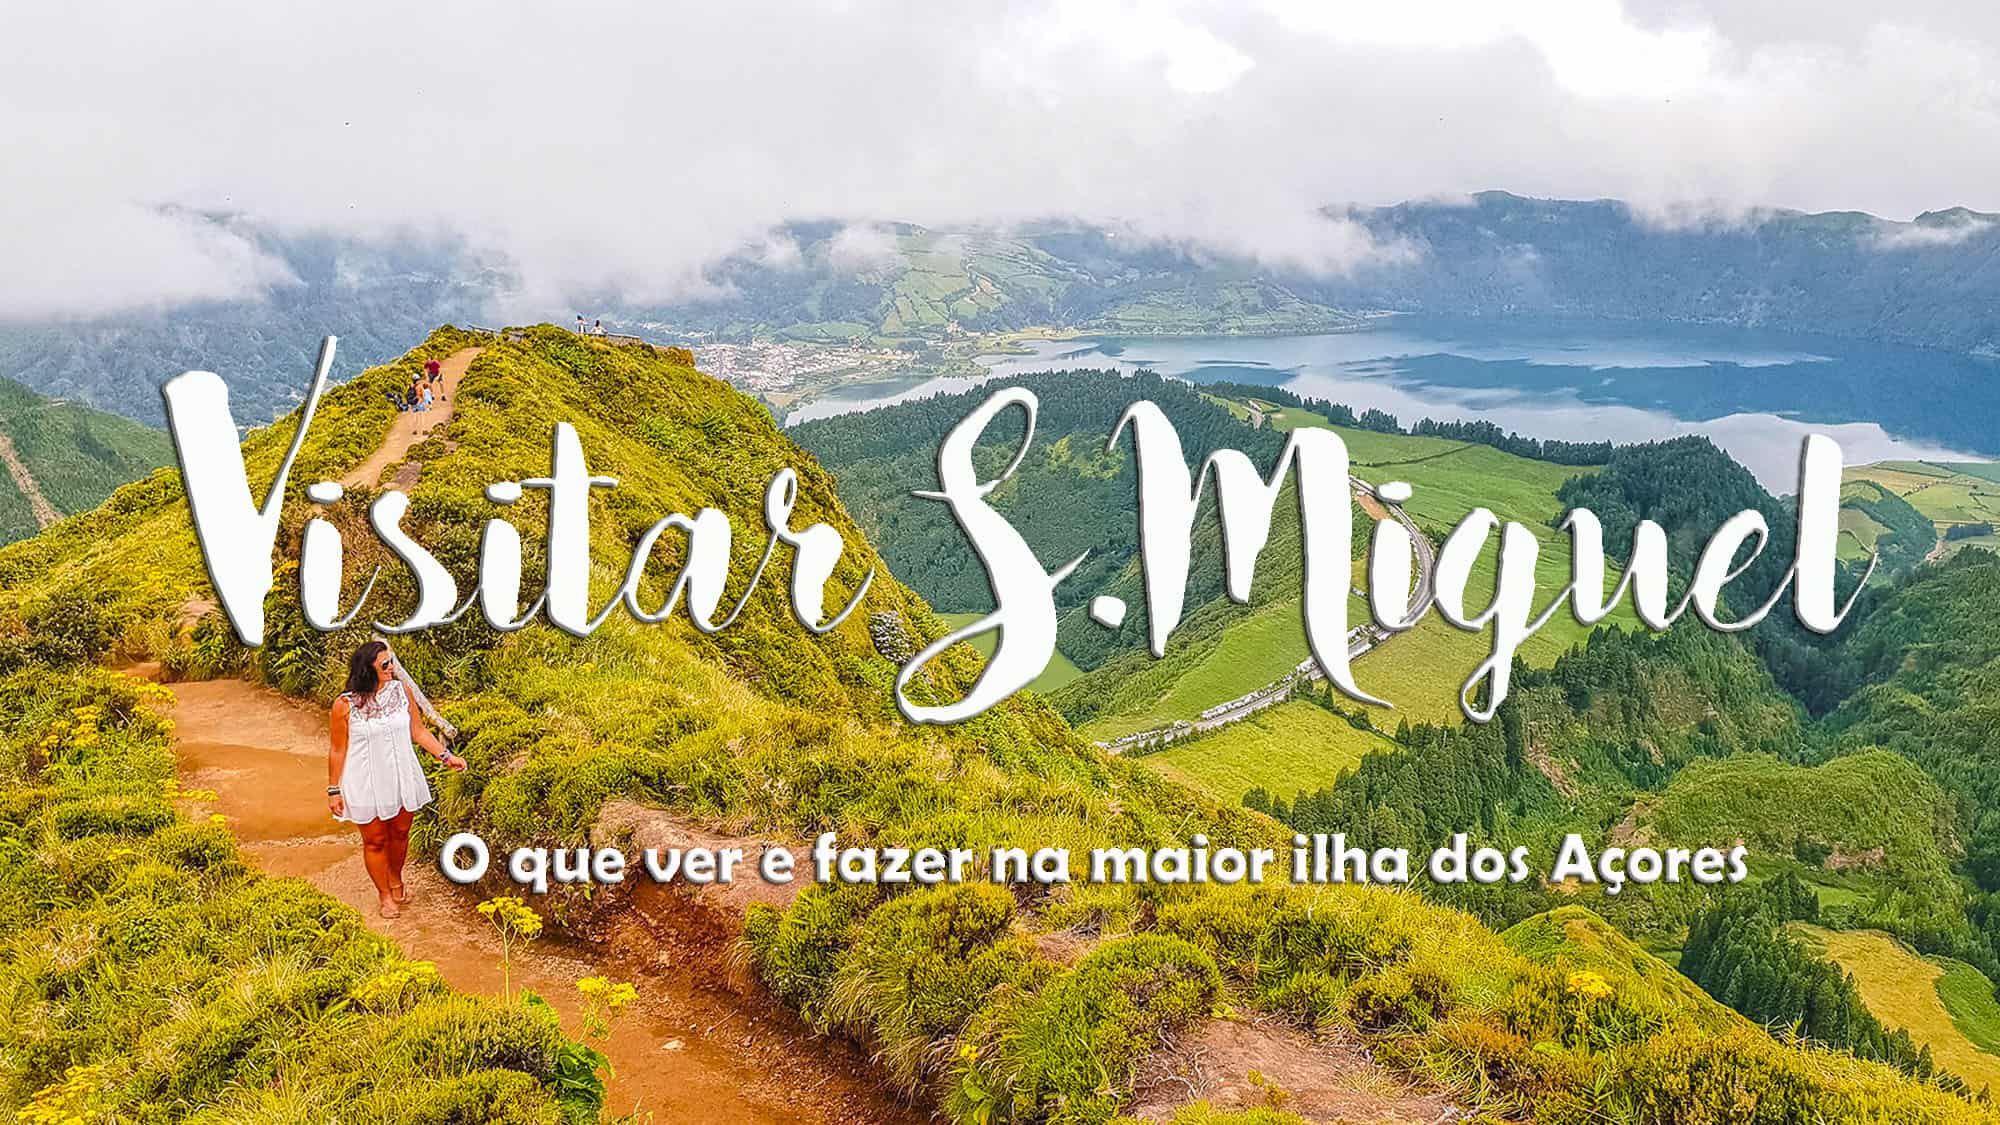 Ilha de SÃO MIGUEL - Açores | Dicas e Lugares obrigatórios a visitar